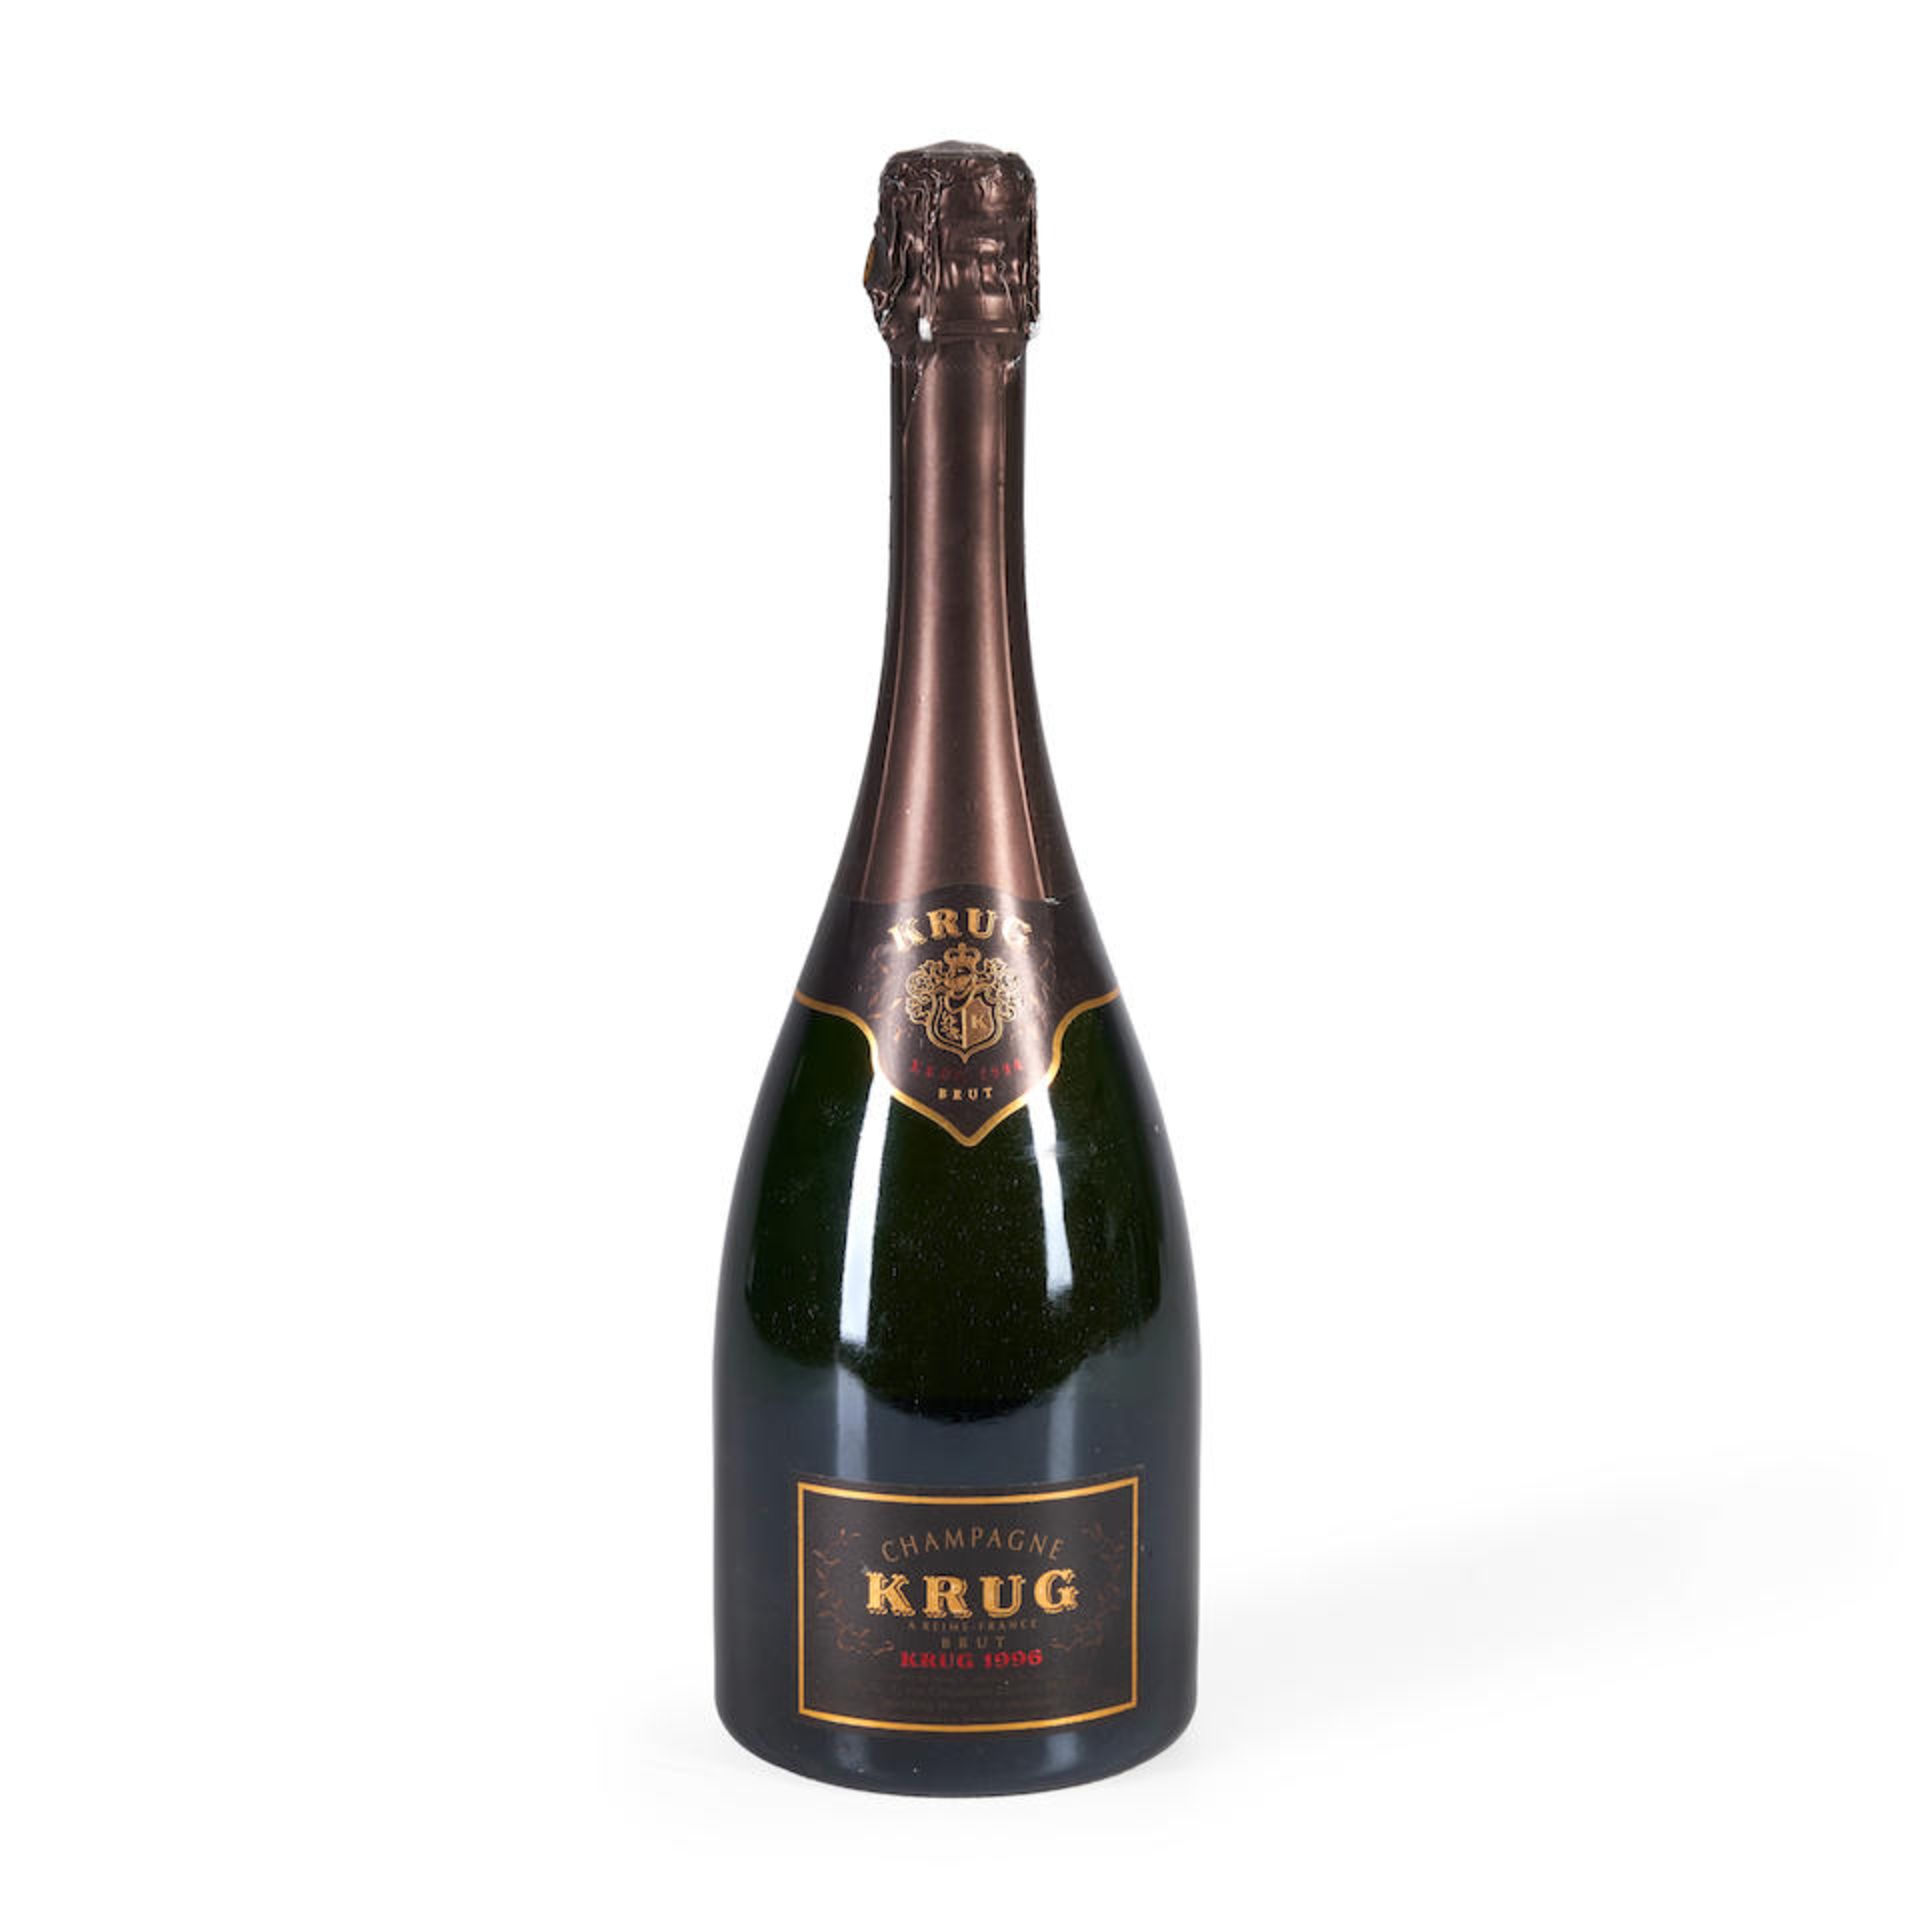 Krug 1996 (1 bottle)